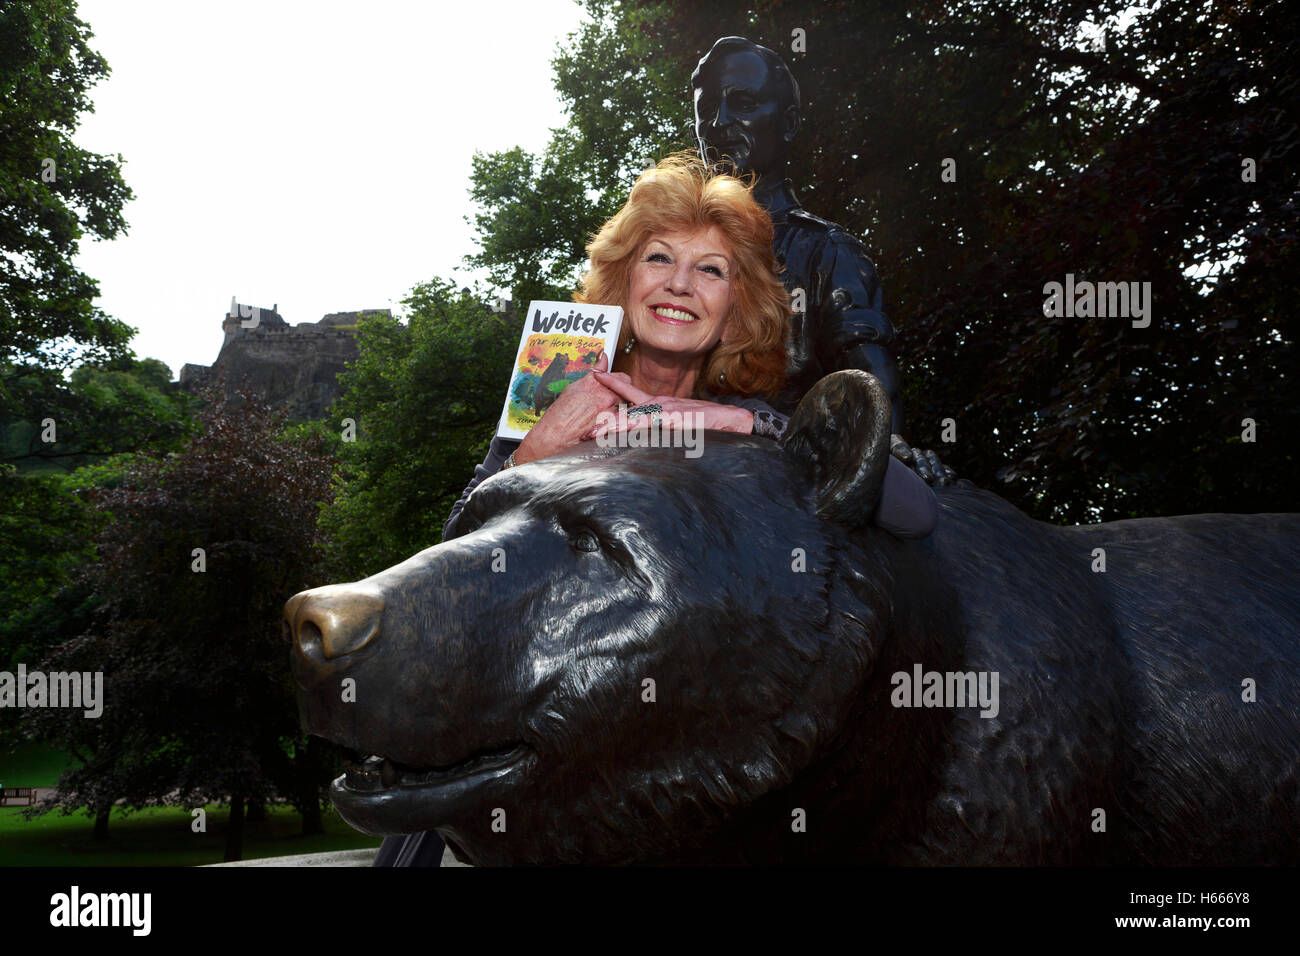 Rula Lenska Wojtek et l'ours sont réunis avec leur histoire de la Pologne à l'Edinburgh Fringe. Article Lenska possèdent à Édimbourg Banque D'Images